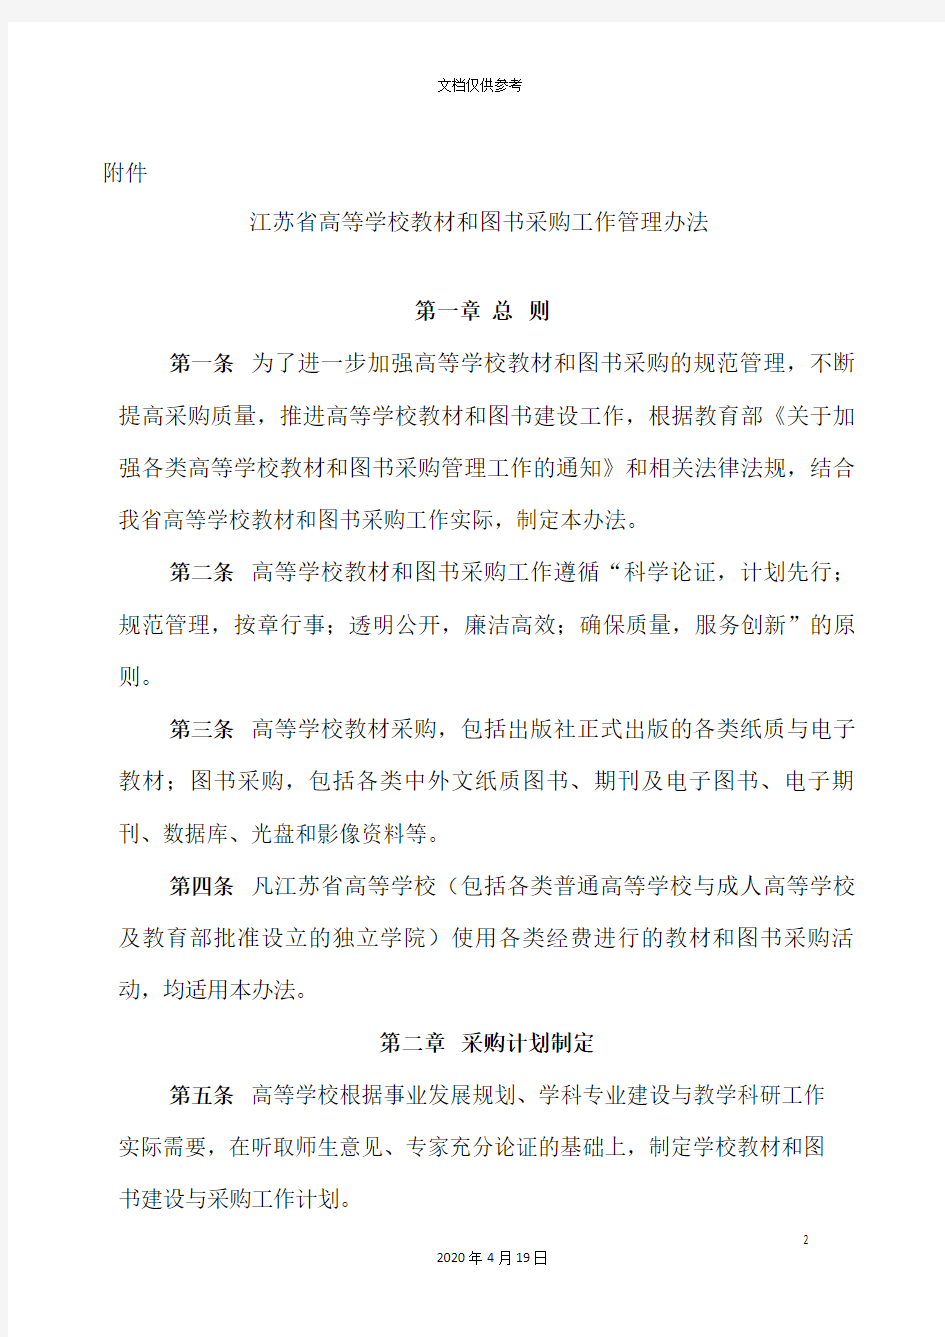 江苏省高等学校教材和图书采购工作管理办法